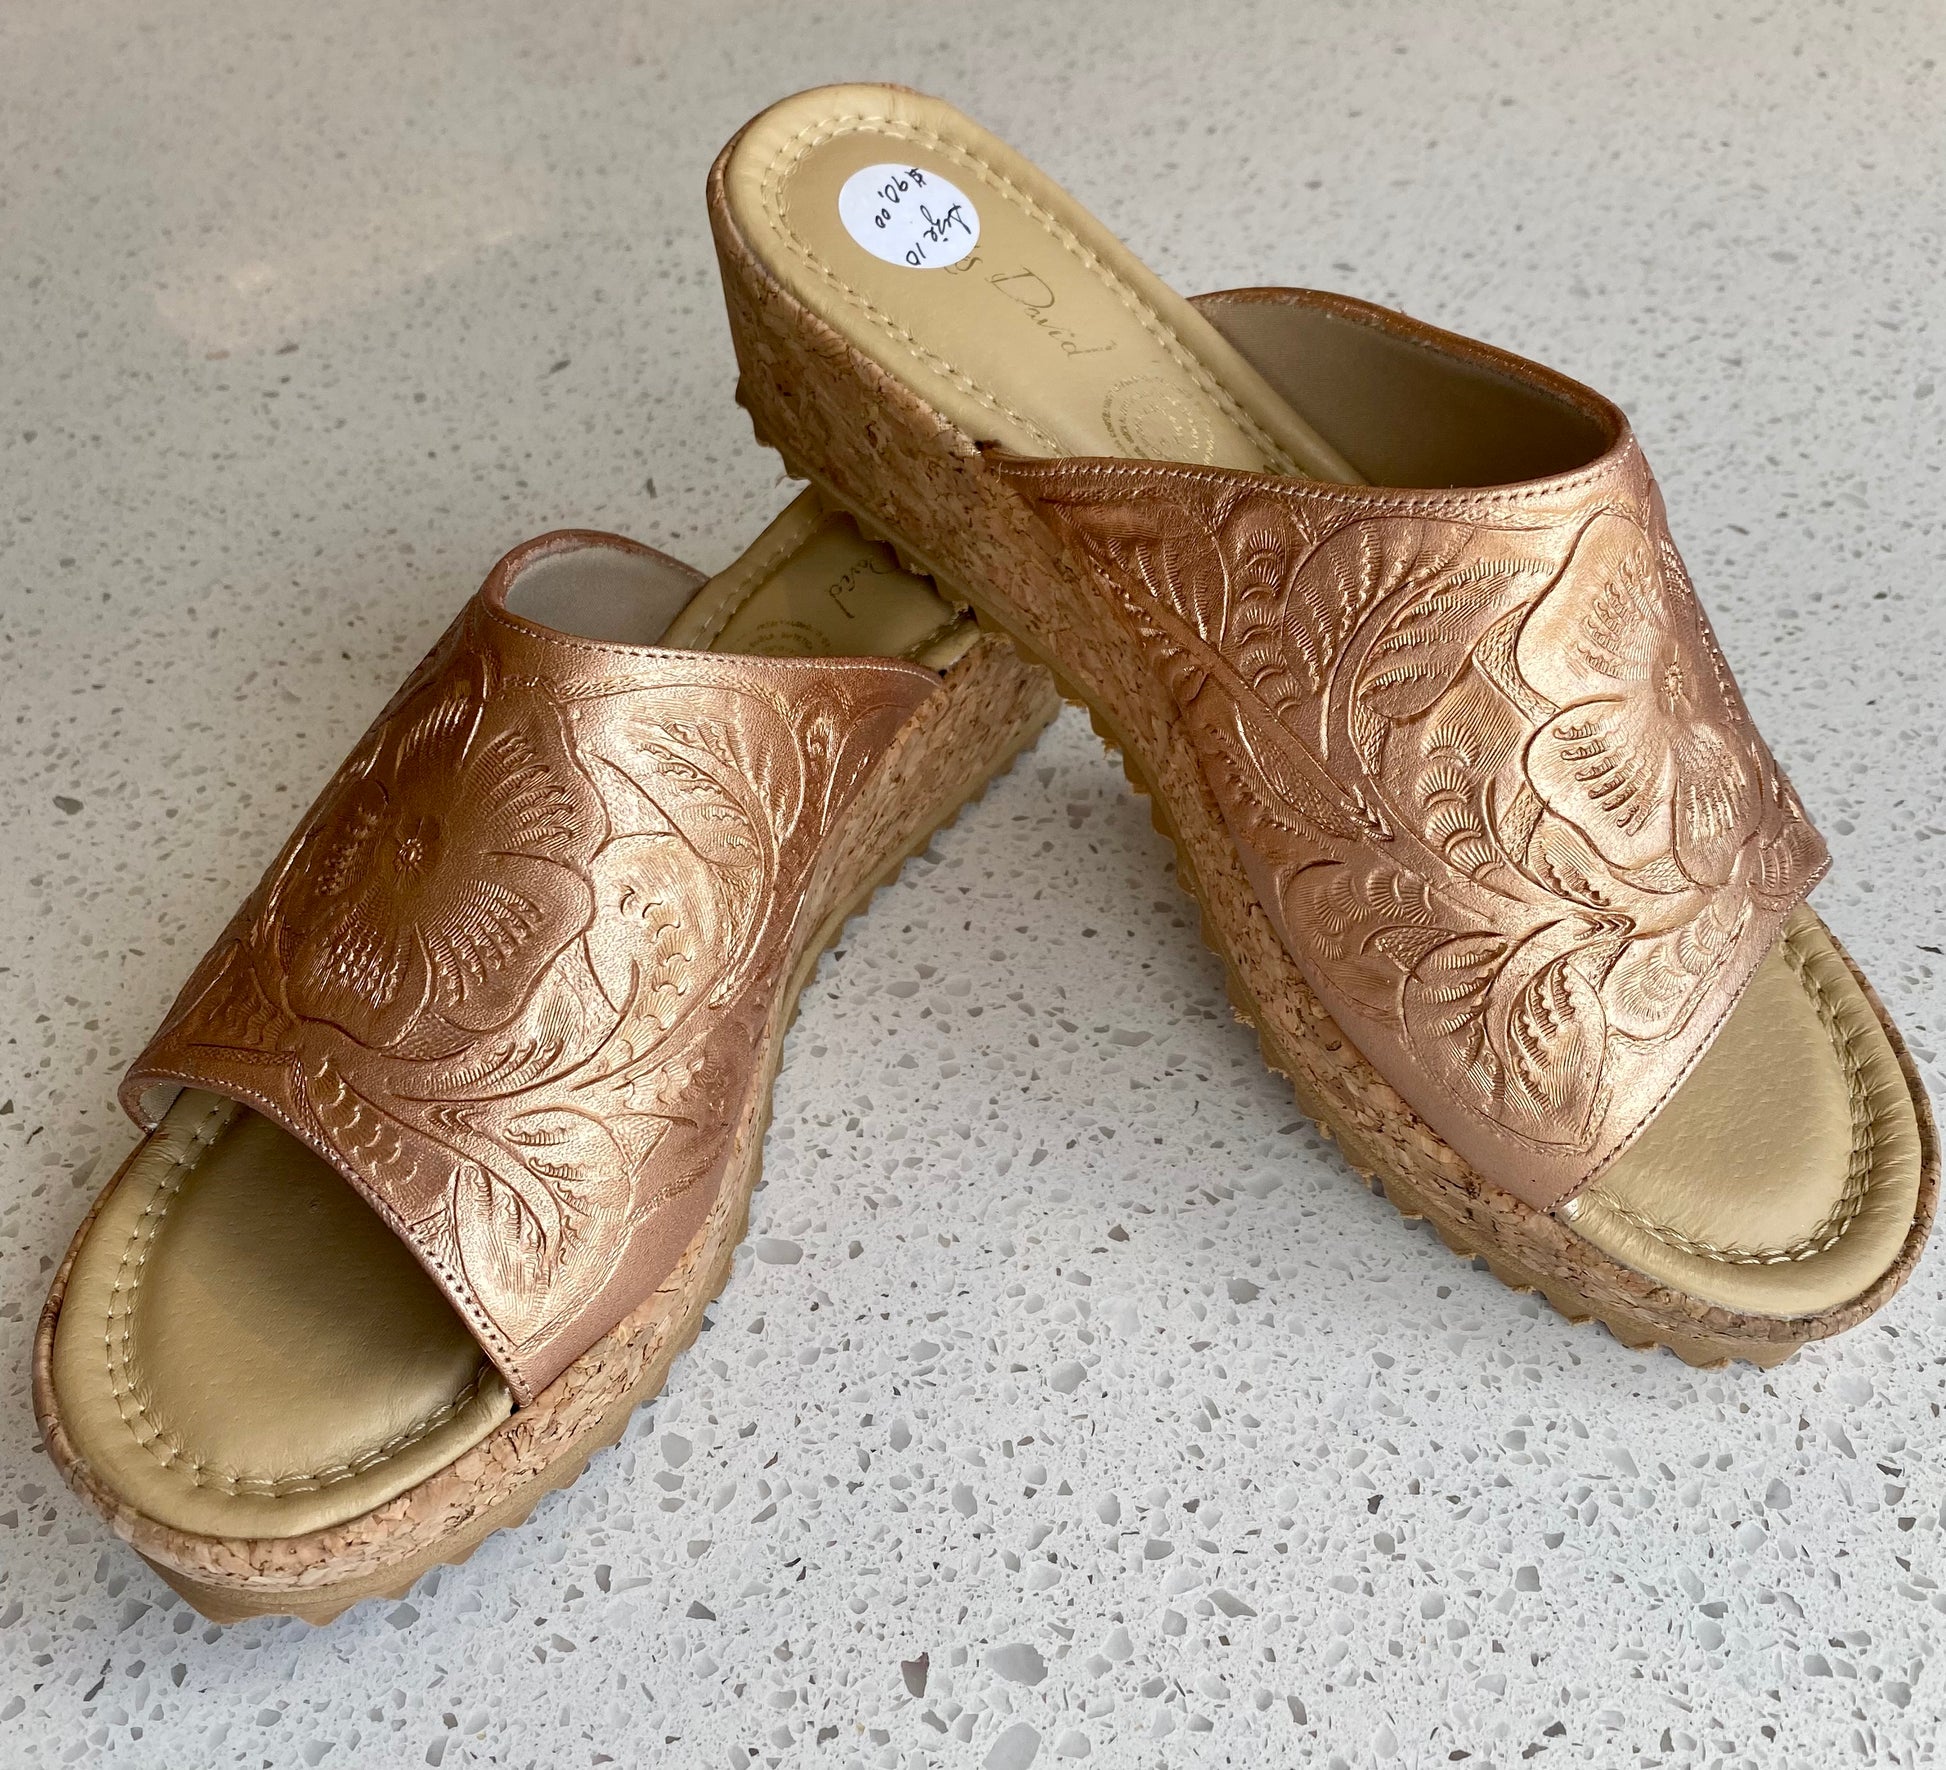 Hand-Tooled Leather 2” Cork Low Heel Heels Hide and Chic Metallic Bronze  